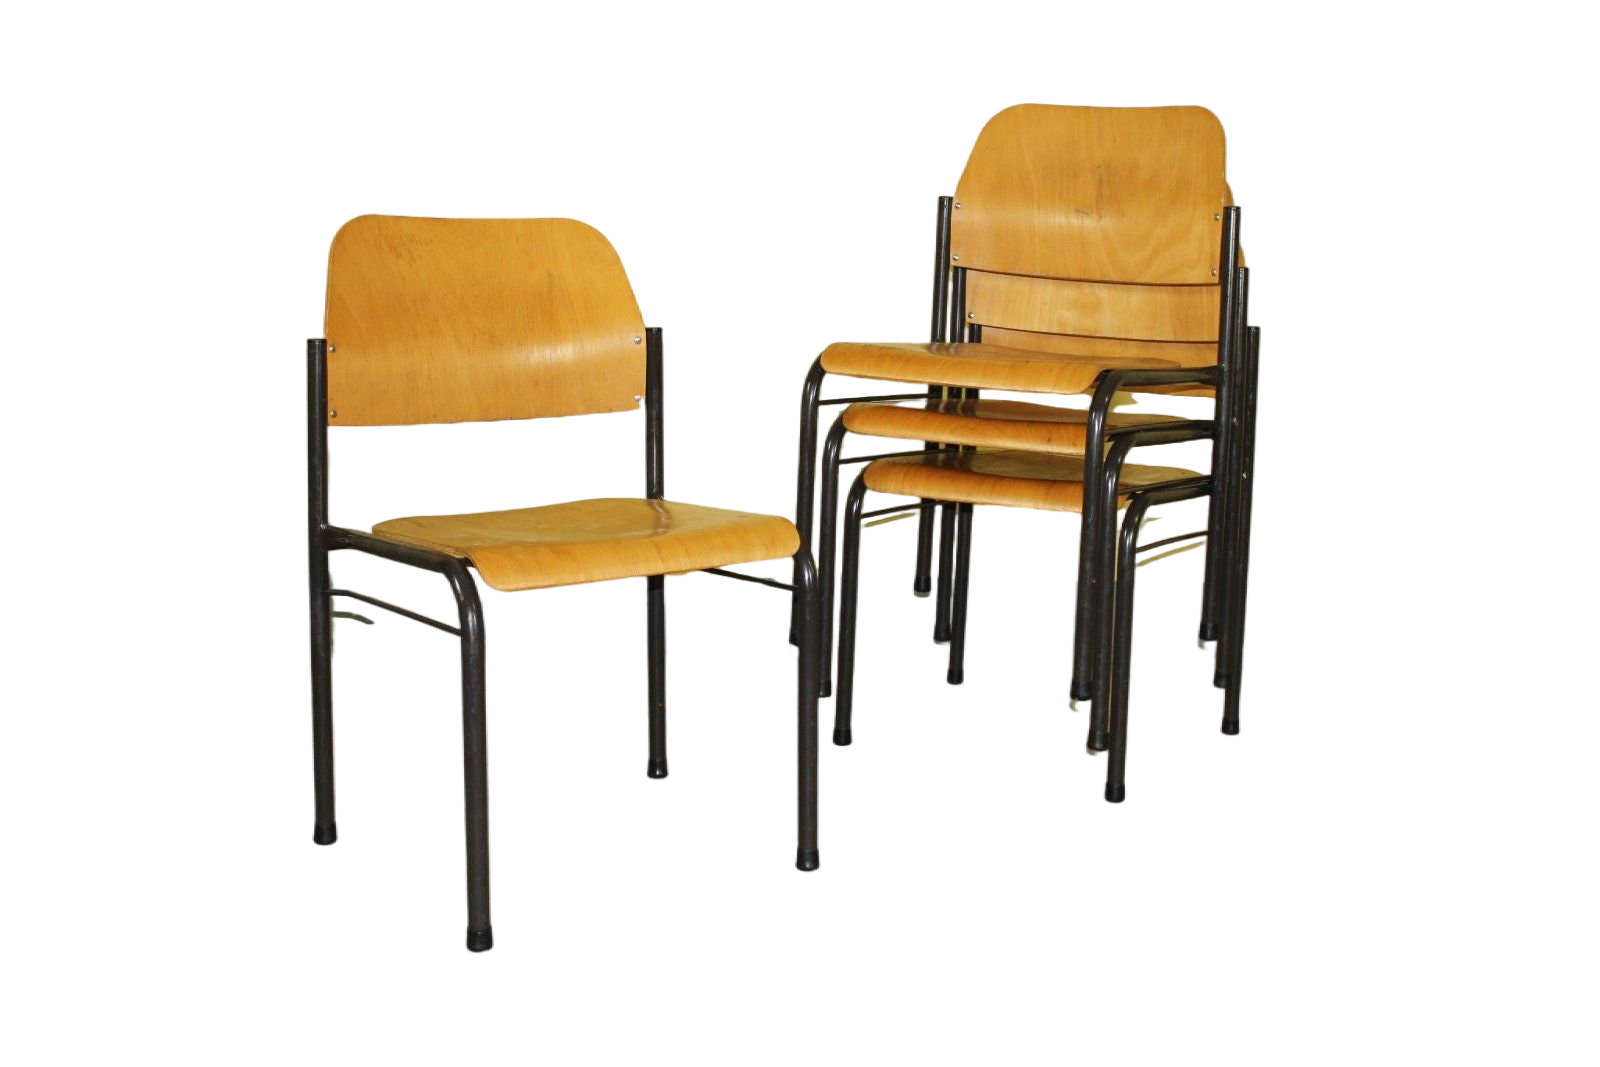 2er Set Vintage Holz Stapelstuhl Industrial Loft Stuhl Stühle